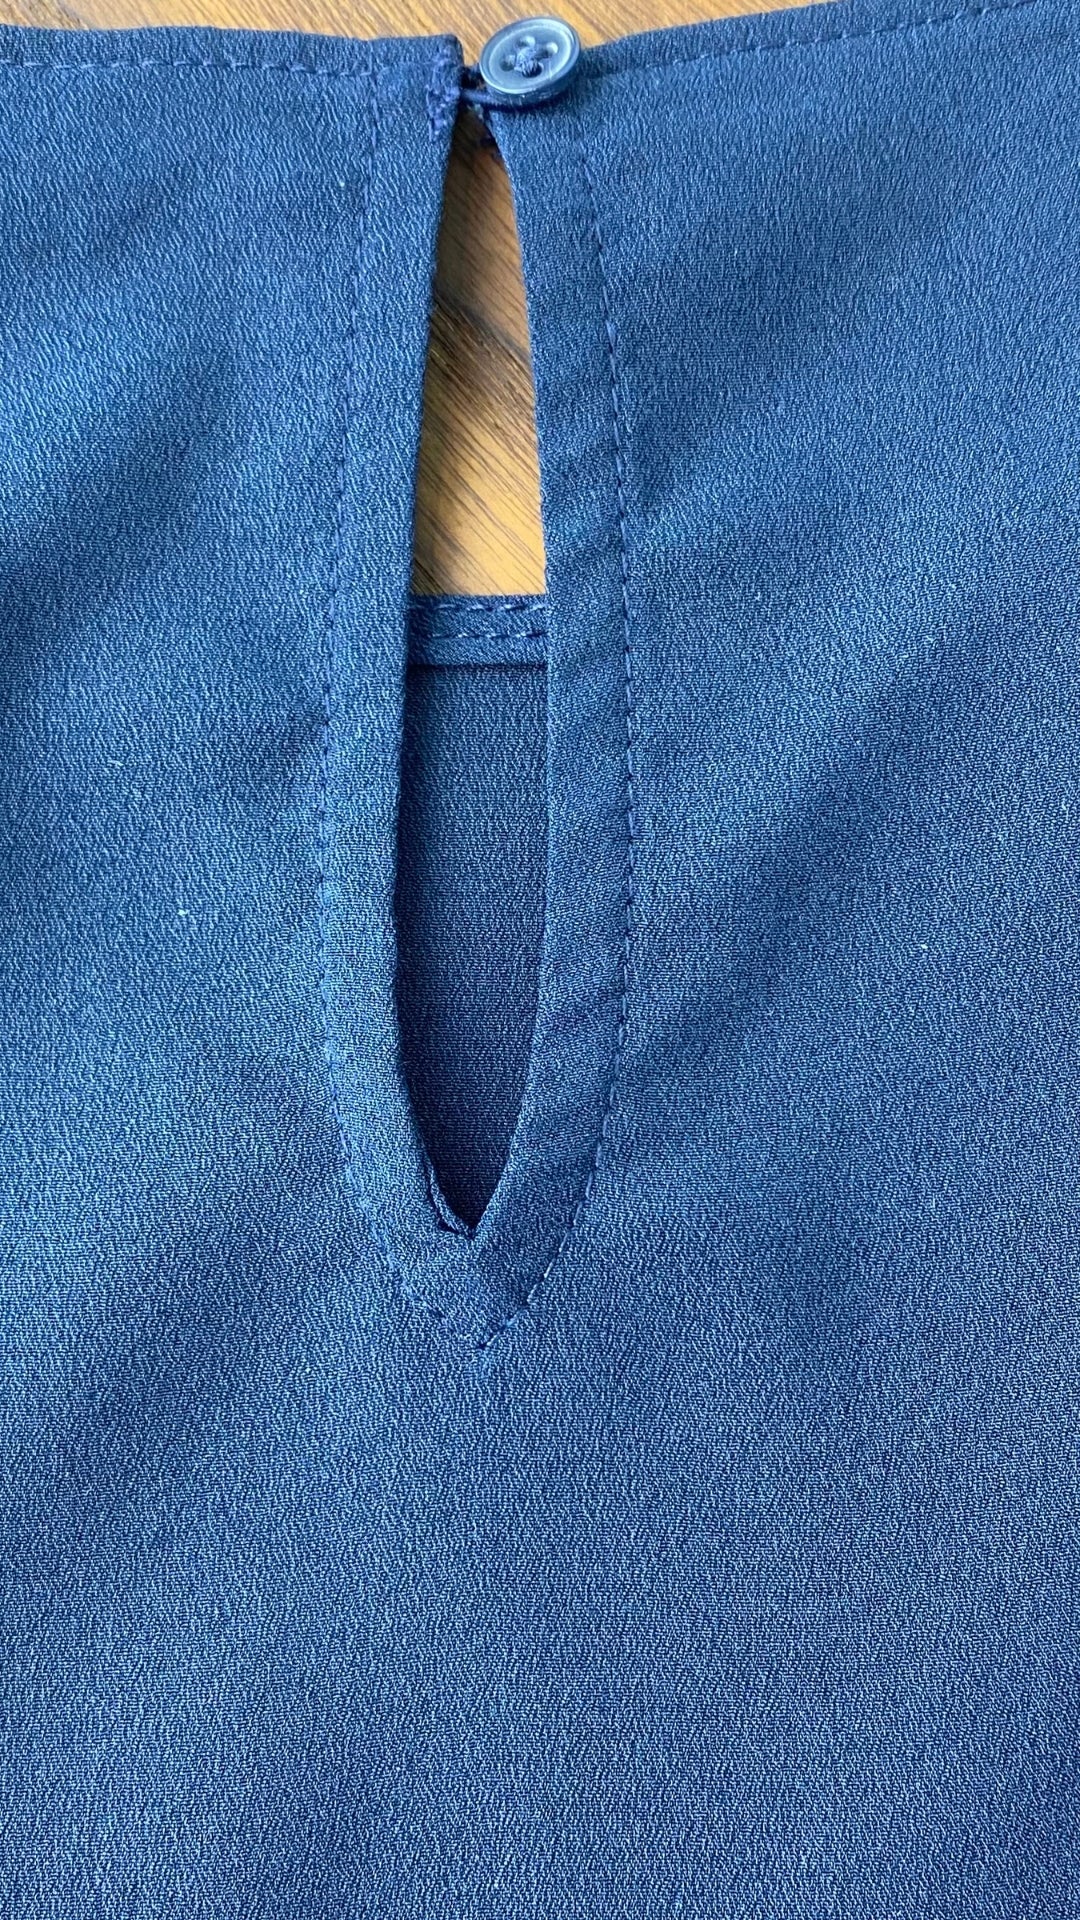 Camisole chic marine avec liséré de bleu azur, Banana Republic, taille medium. Vue du bouton au haut du dos.